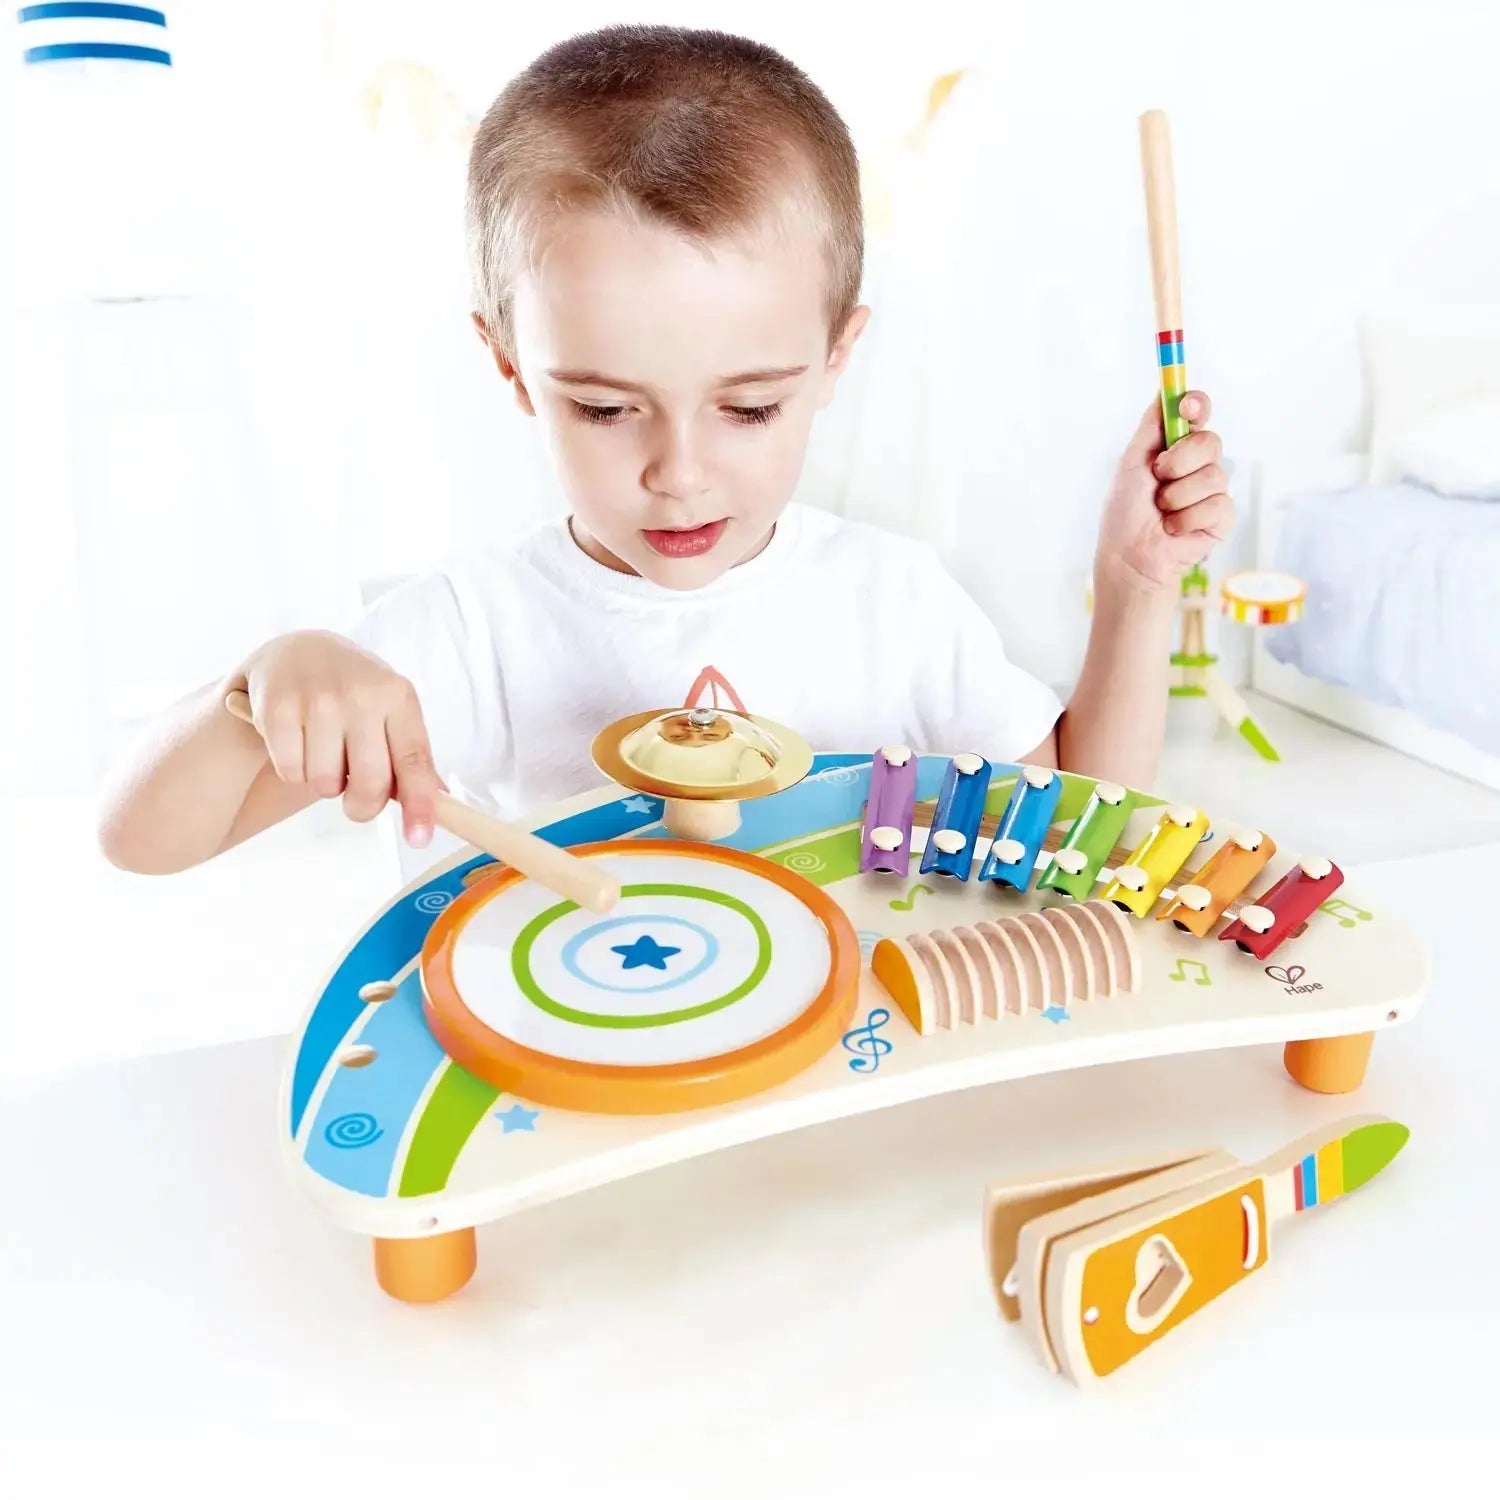 Hape E0333 Baby Drum tambour musical bébé interactif sons et lumières jouet  bois éveil couleurs montessori lot SOP77 - Hape | Beebs